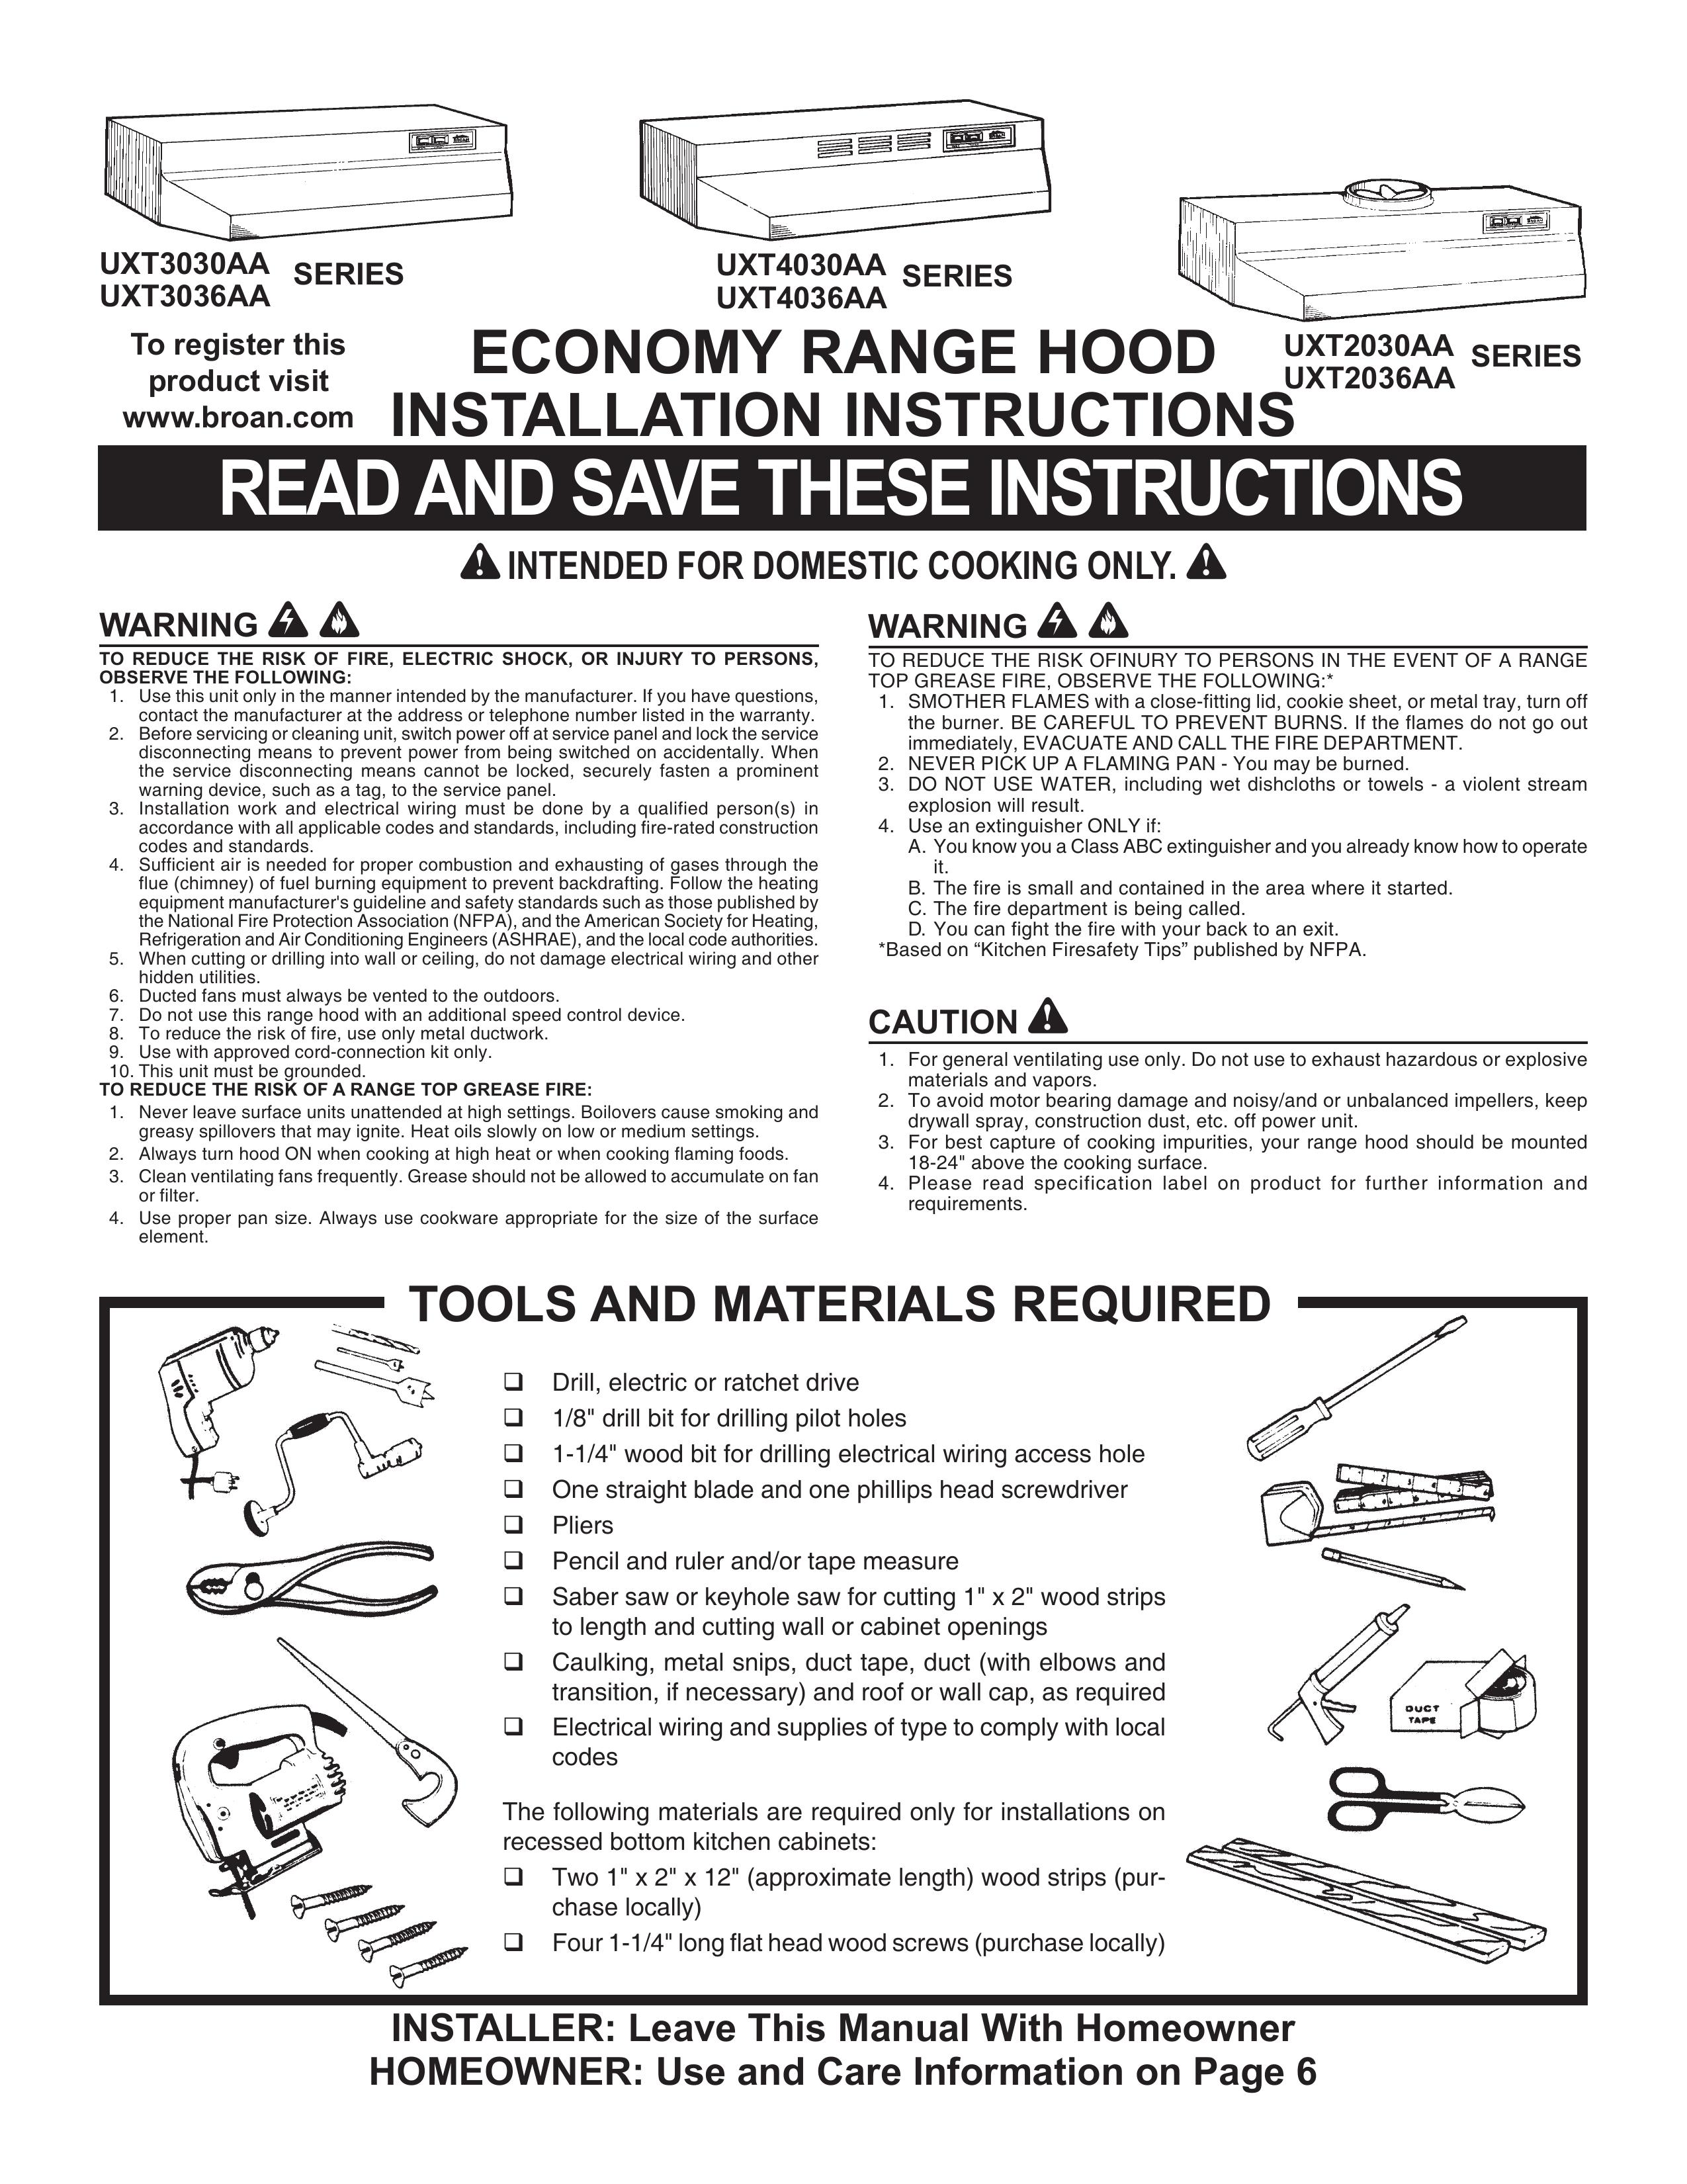 Maytag UXT3030AA Ventilation Hood User Manual